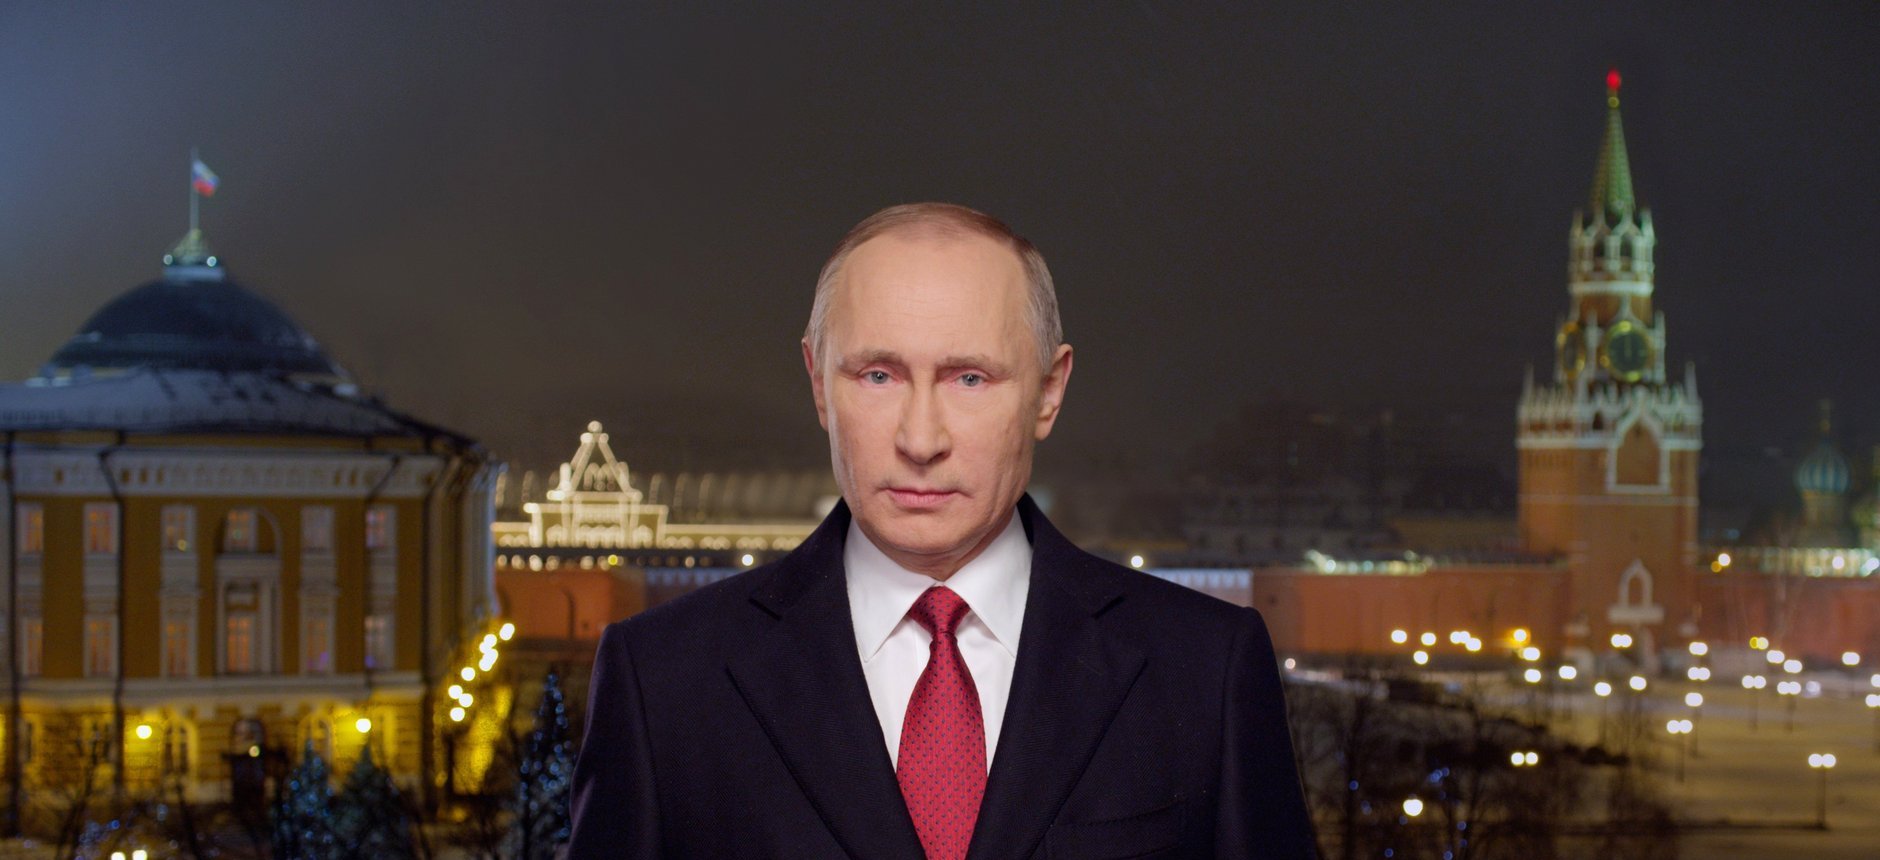 Ανακοίνωσε την υποψηφιότητά του για τις εκλογές του 2018 ο Β.Πούτιν: «Θα κάνω την Ρωσία την ισχυρότερη χώρα»!